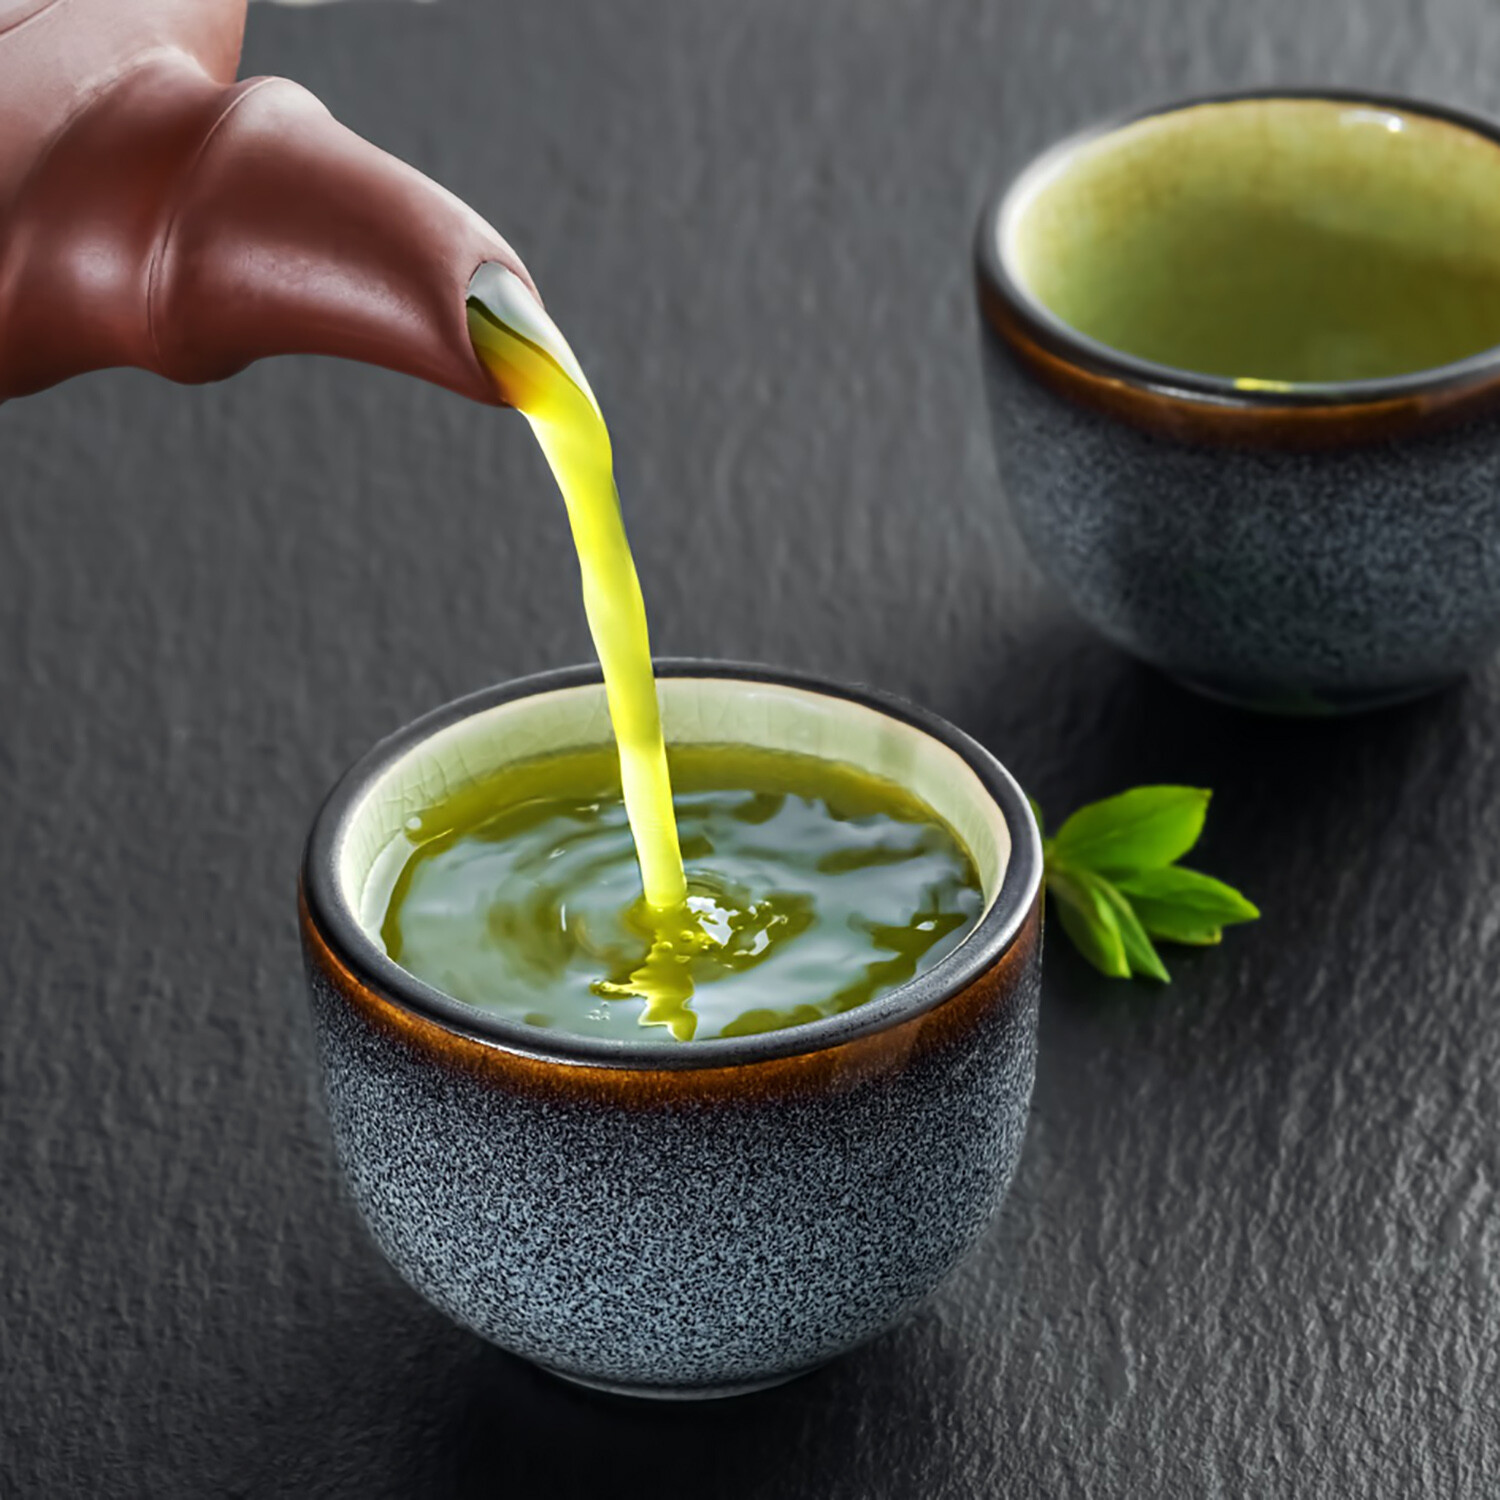 綠茶是綠色 地中海飲食 中的重要成分，具有 減重 及改善 肥胖 的作用。